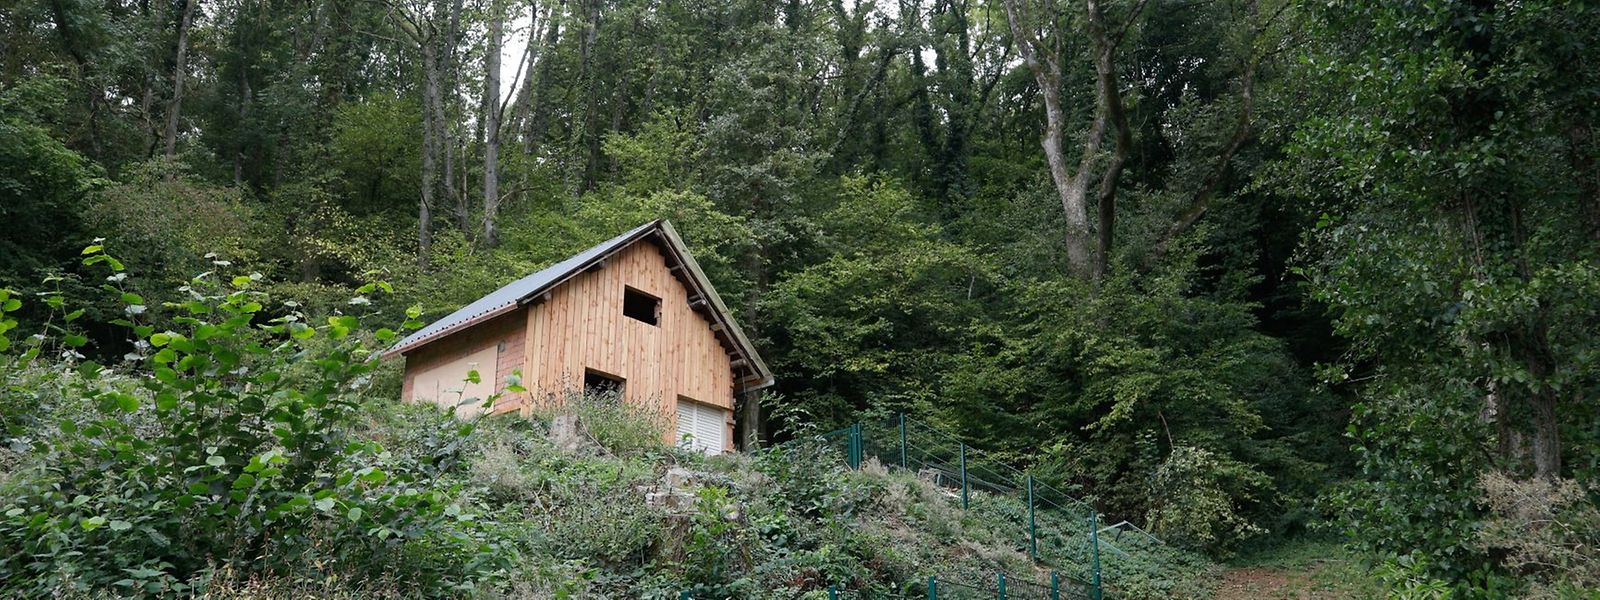 «L'abri de jardin le plus célèbre du Luxembourg» suscite encore bien des interrogations, même après la démission du bourgmestre Traversini.